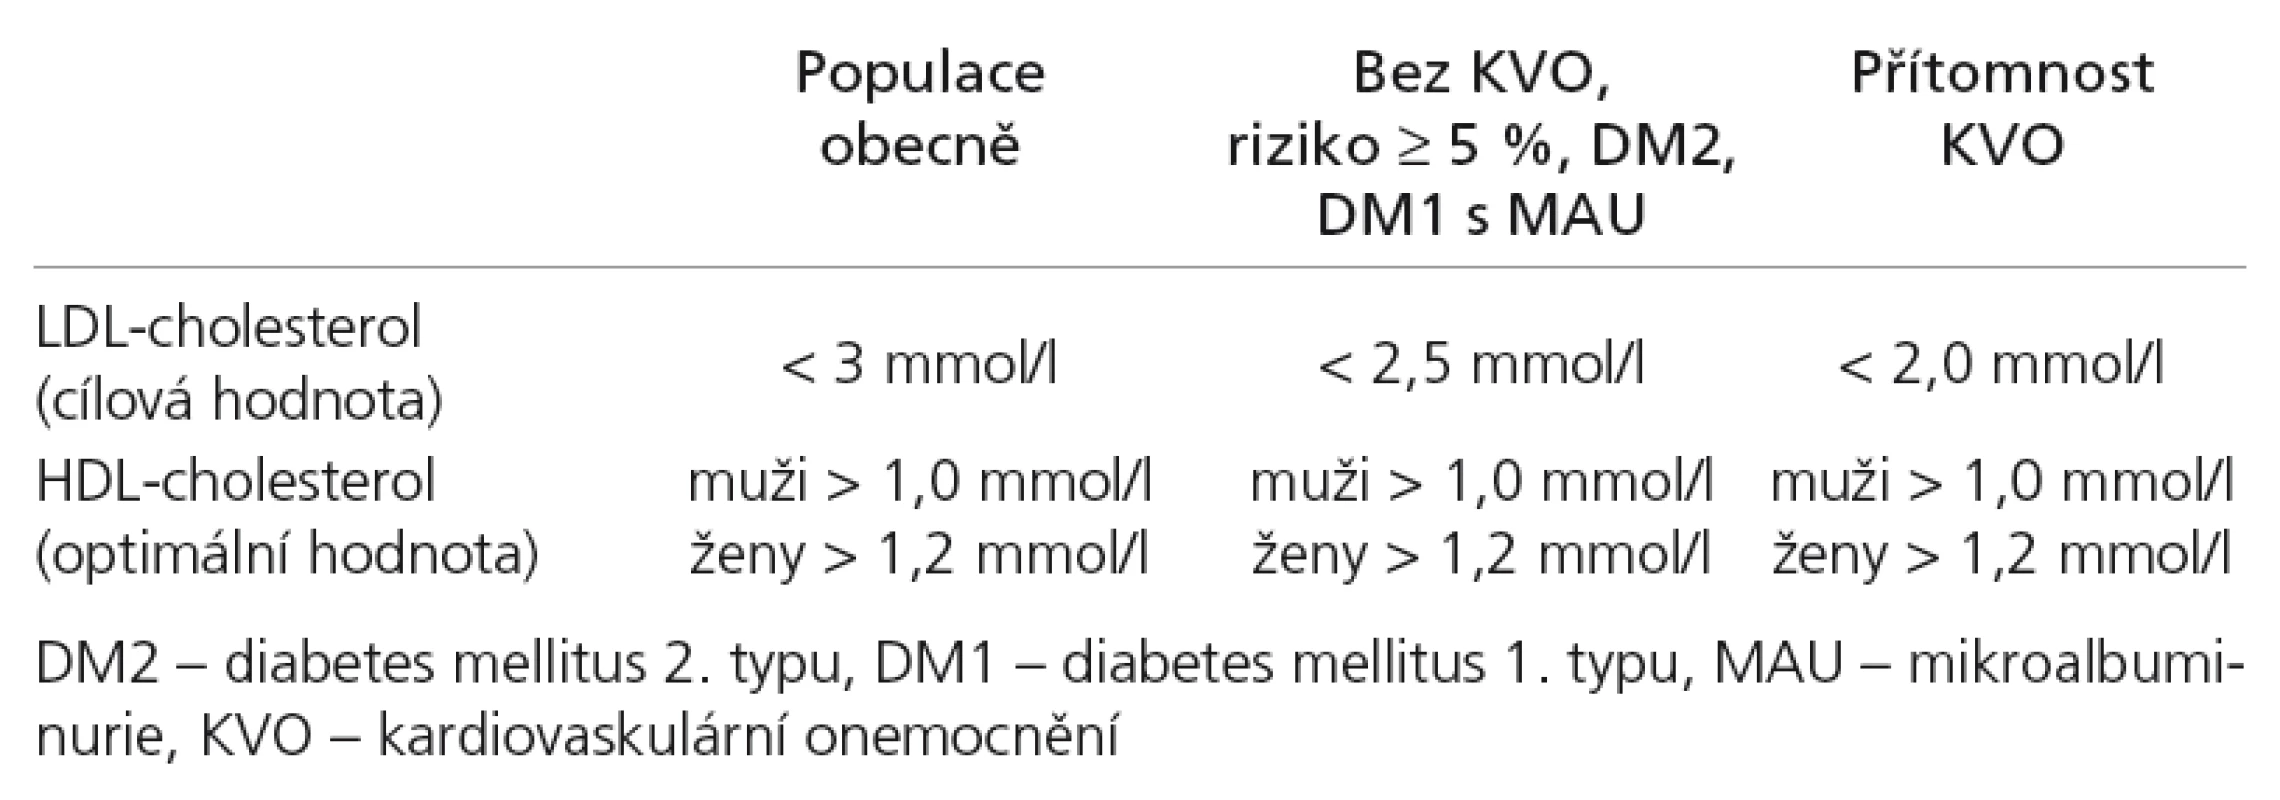 Doporučené hodnoty krevních lipidů pro jednotlivé kategorie rizika [10].